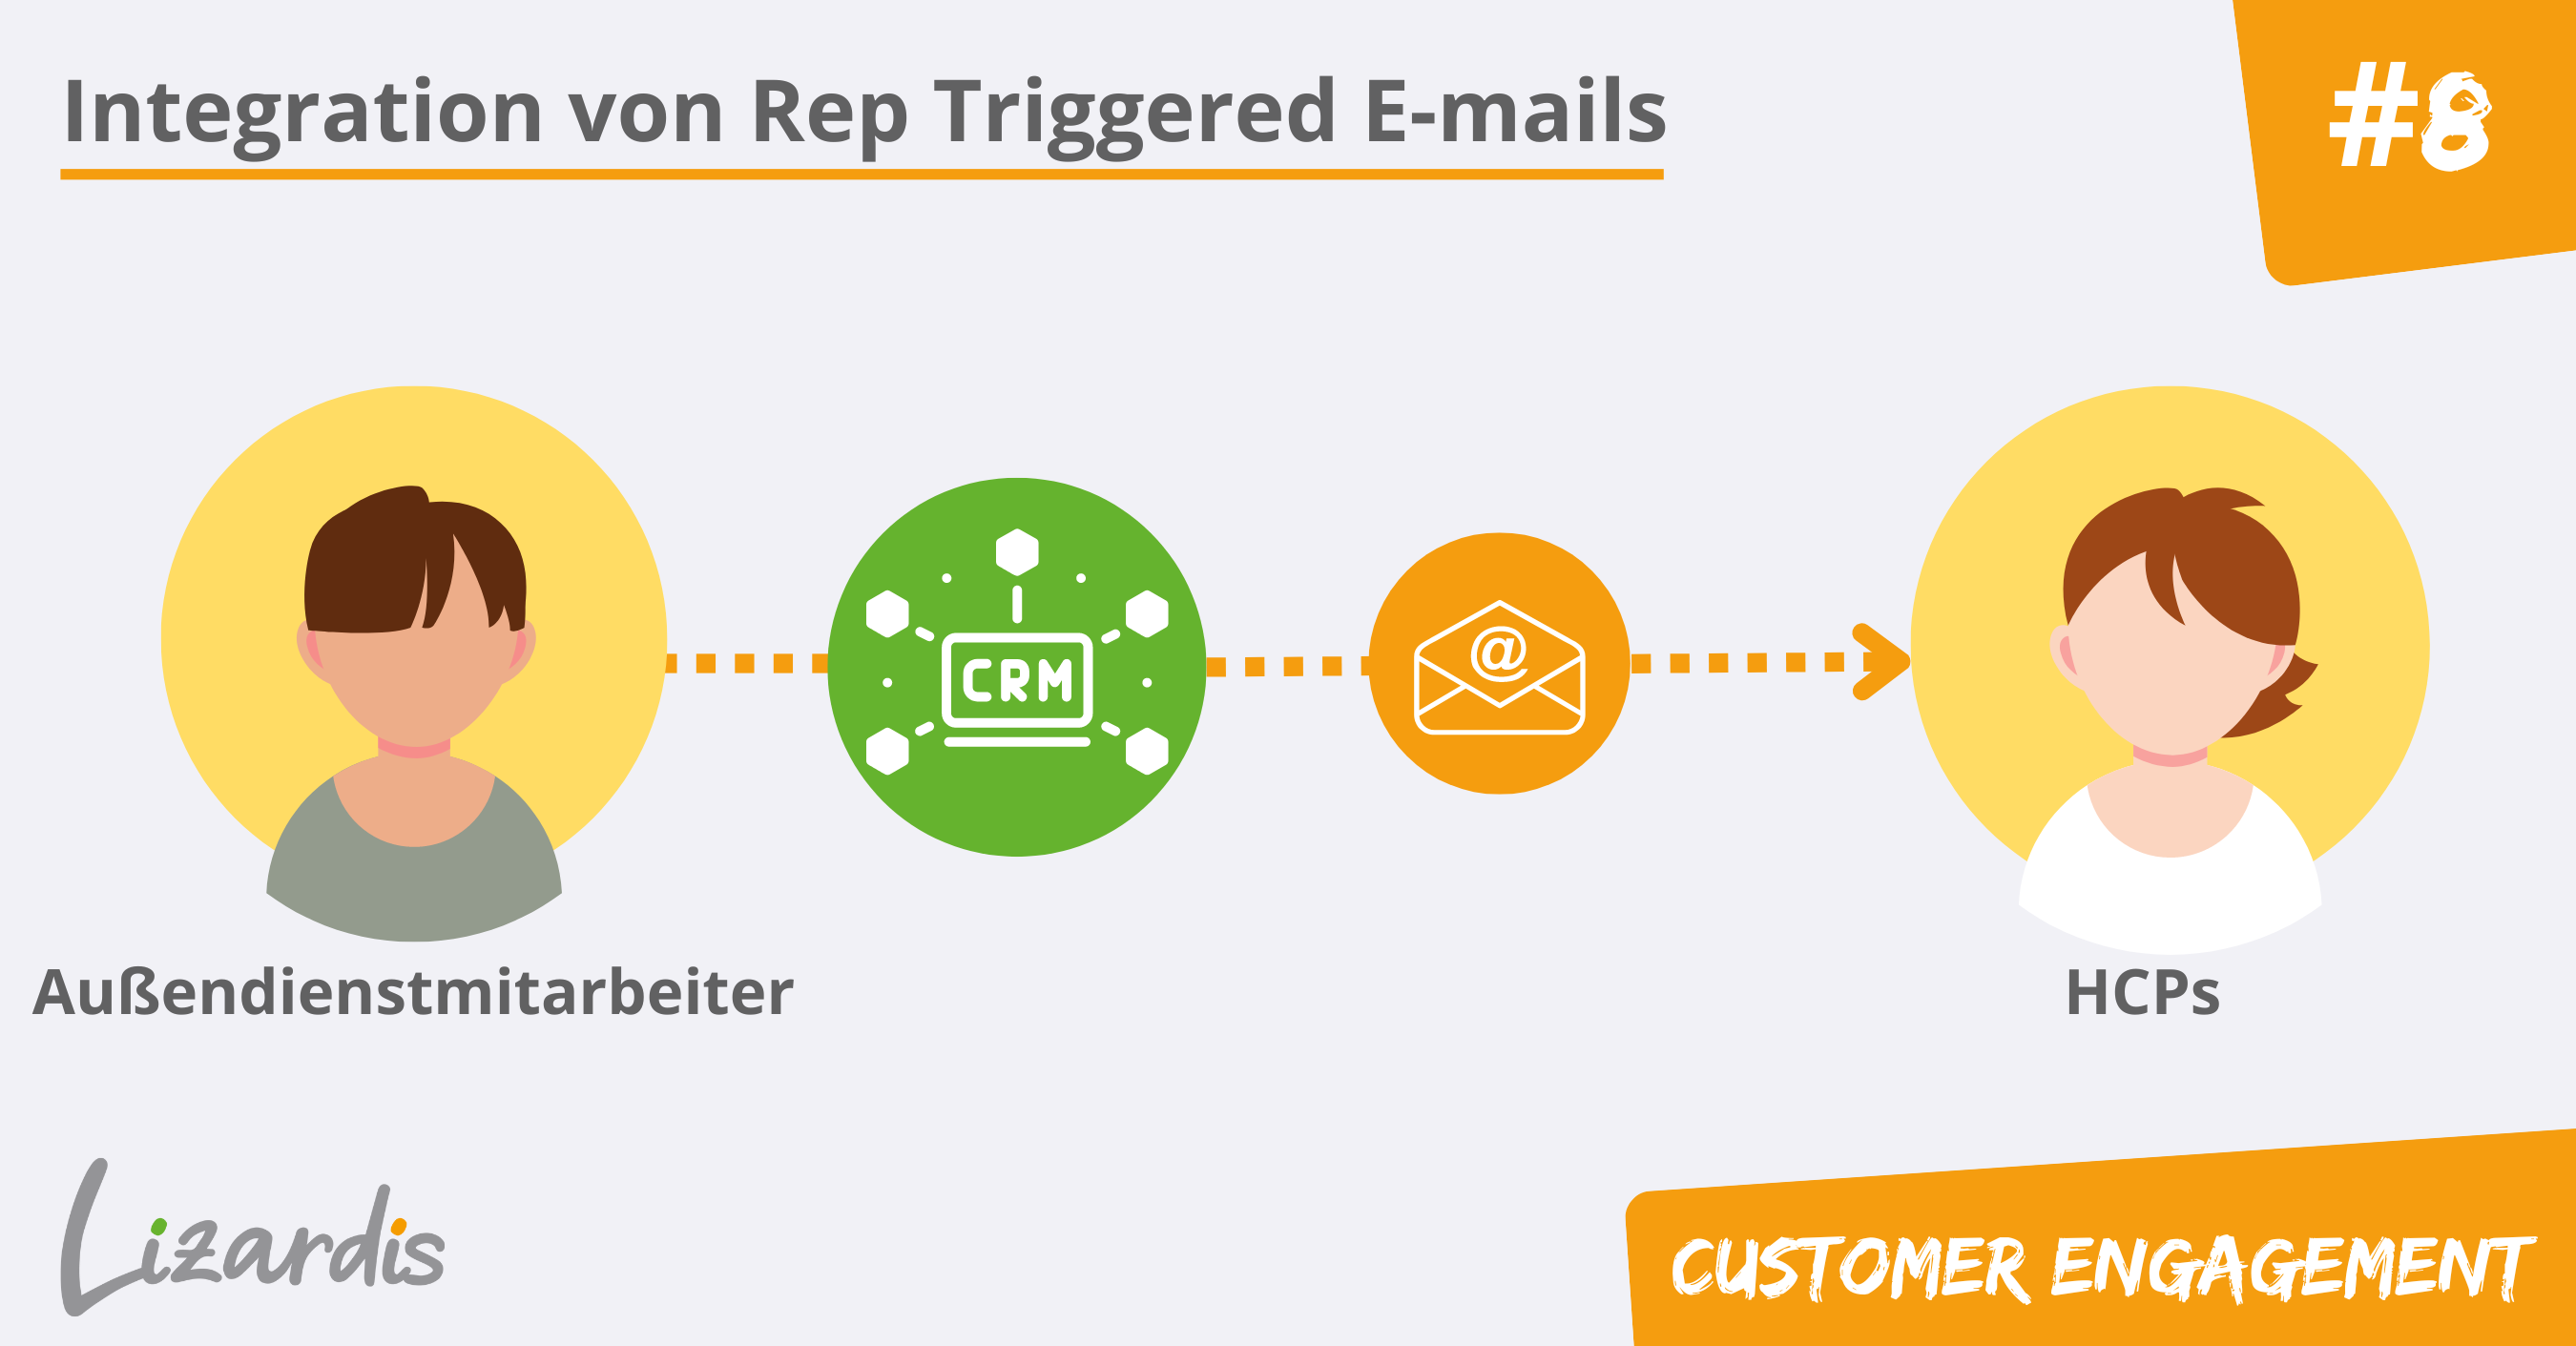 Rep Triggered E-mail Platforms - Bild